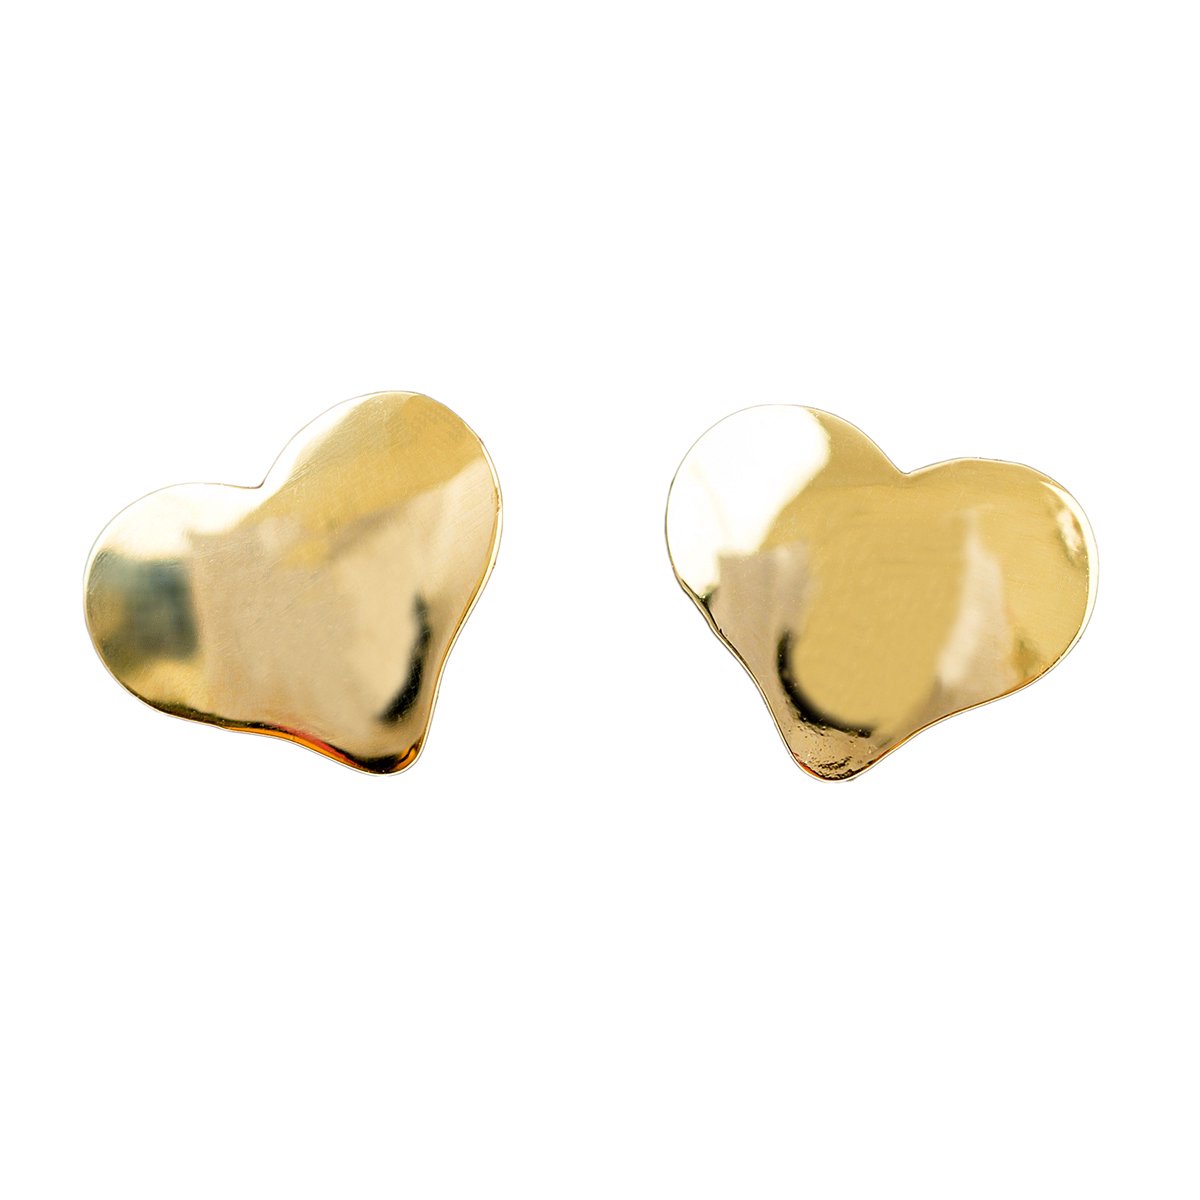 Daniel Crégut Hart kinderoorbellen oorknoppen goud - 18 karaat gouden oorringen - 0.33 g - L 6 mm